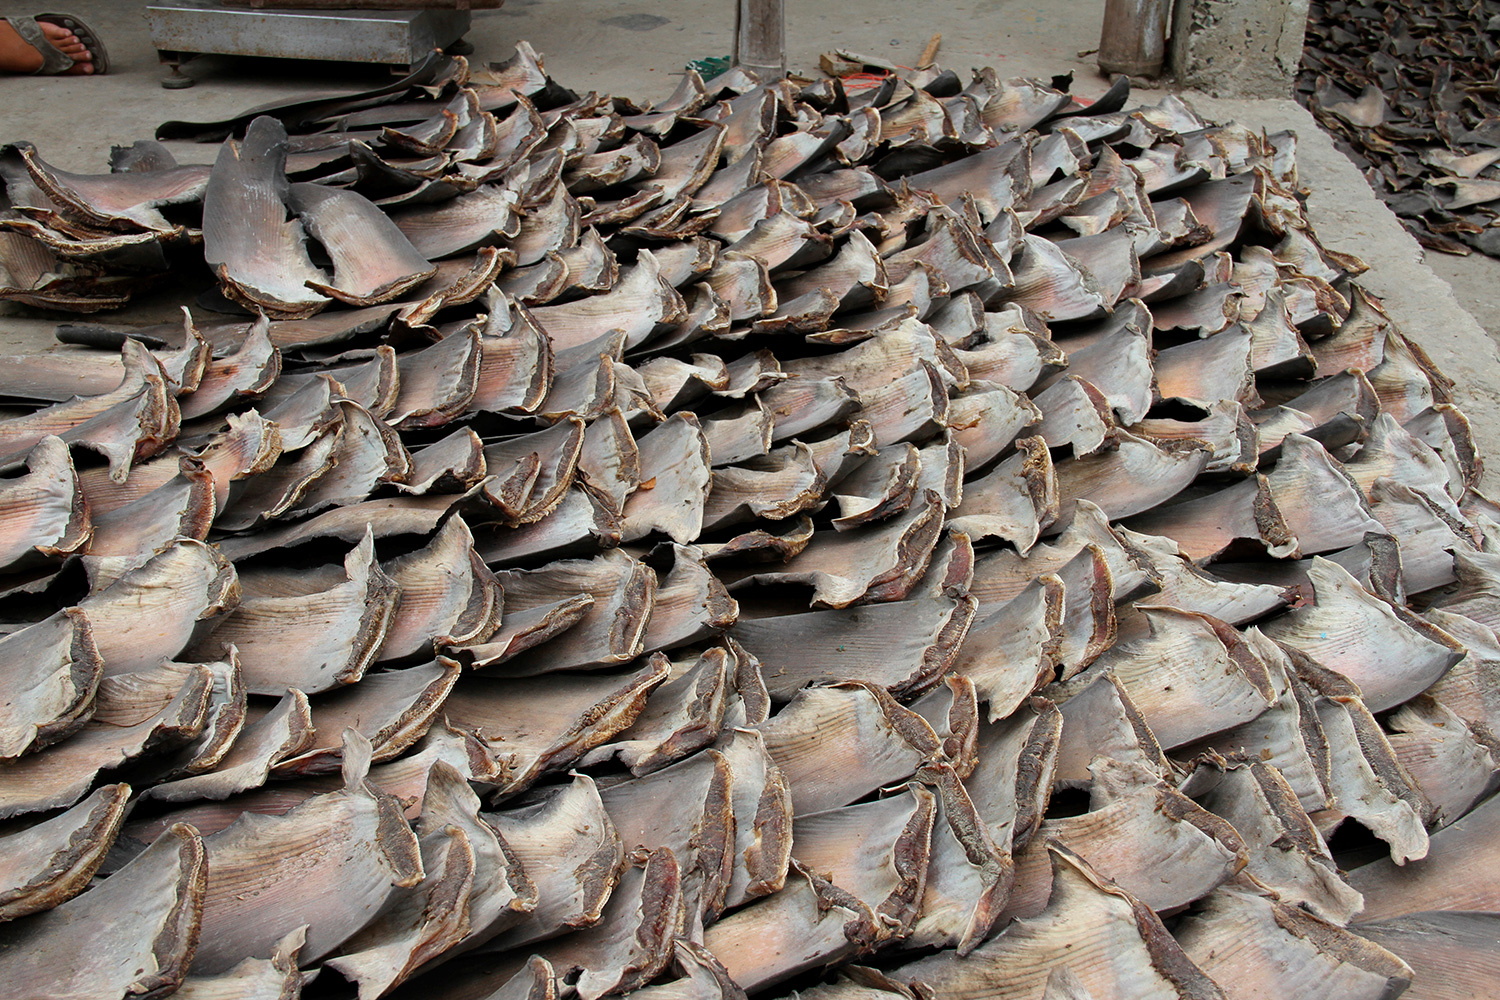 Incautados casi 900 kilos de aletas de tiburón martillo, una especie en peligro de extinción